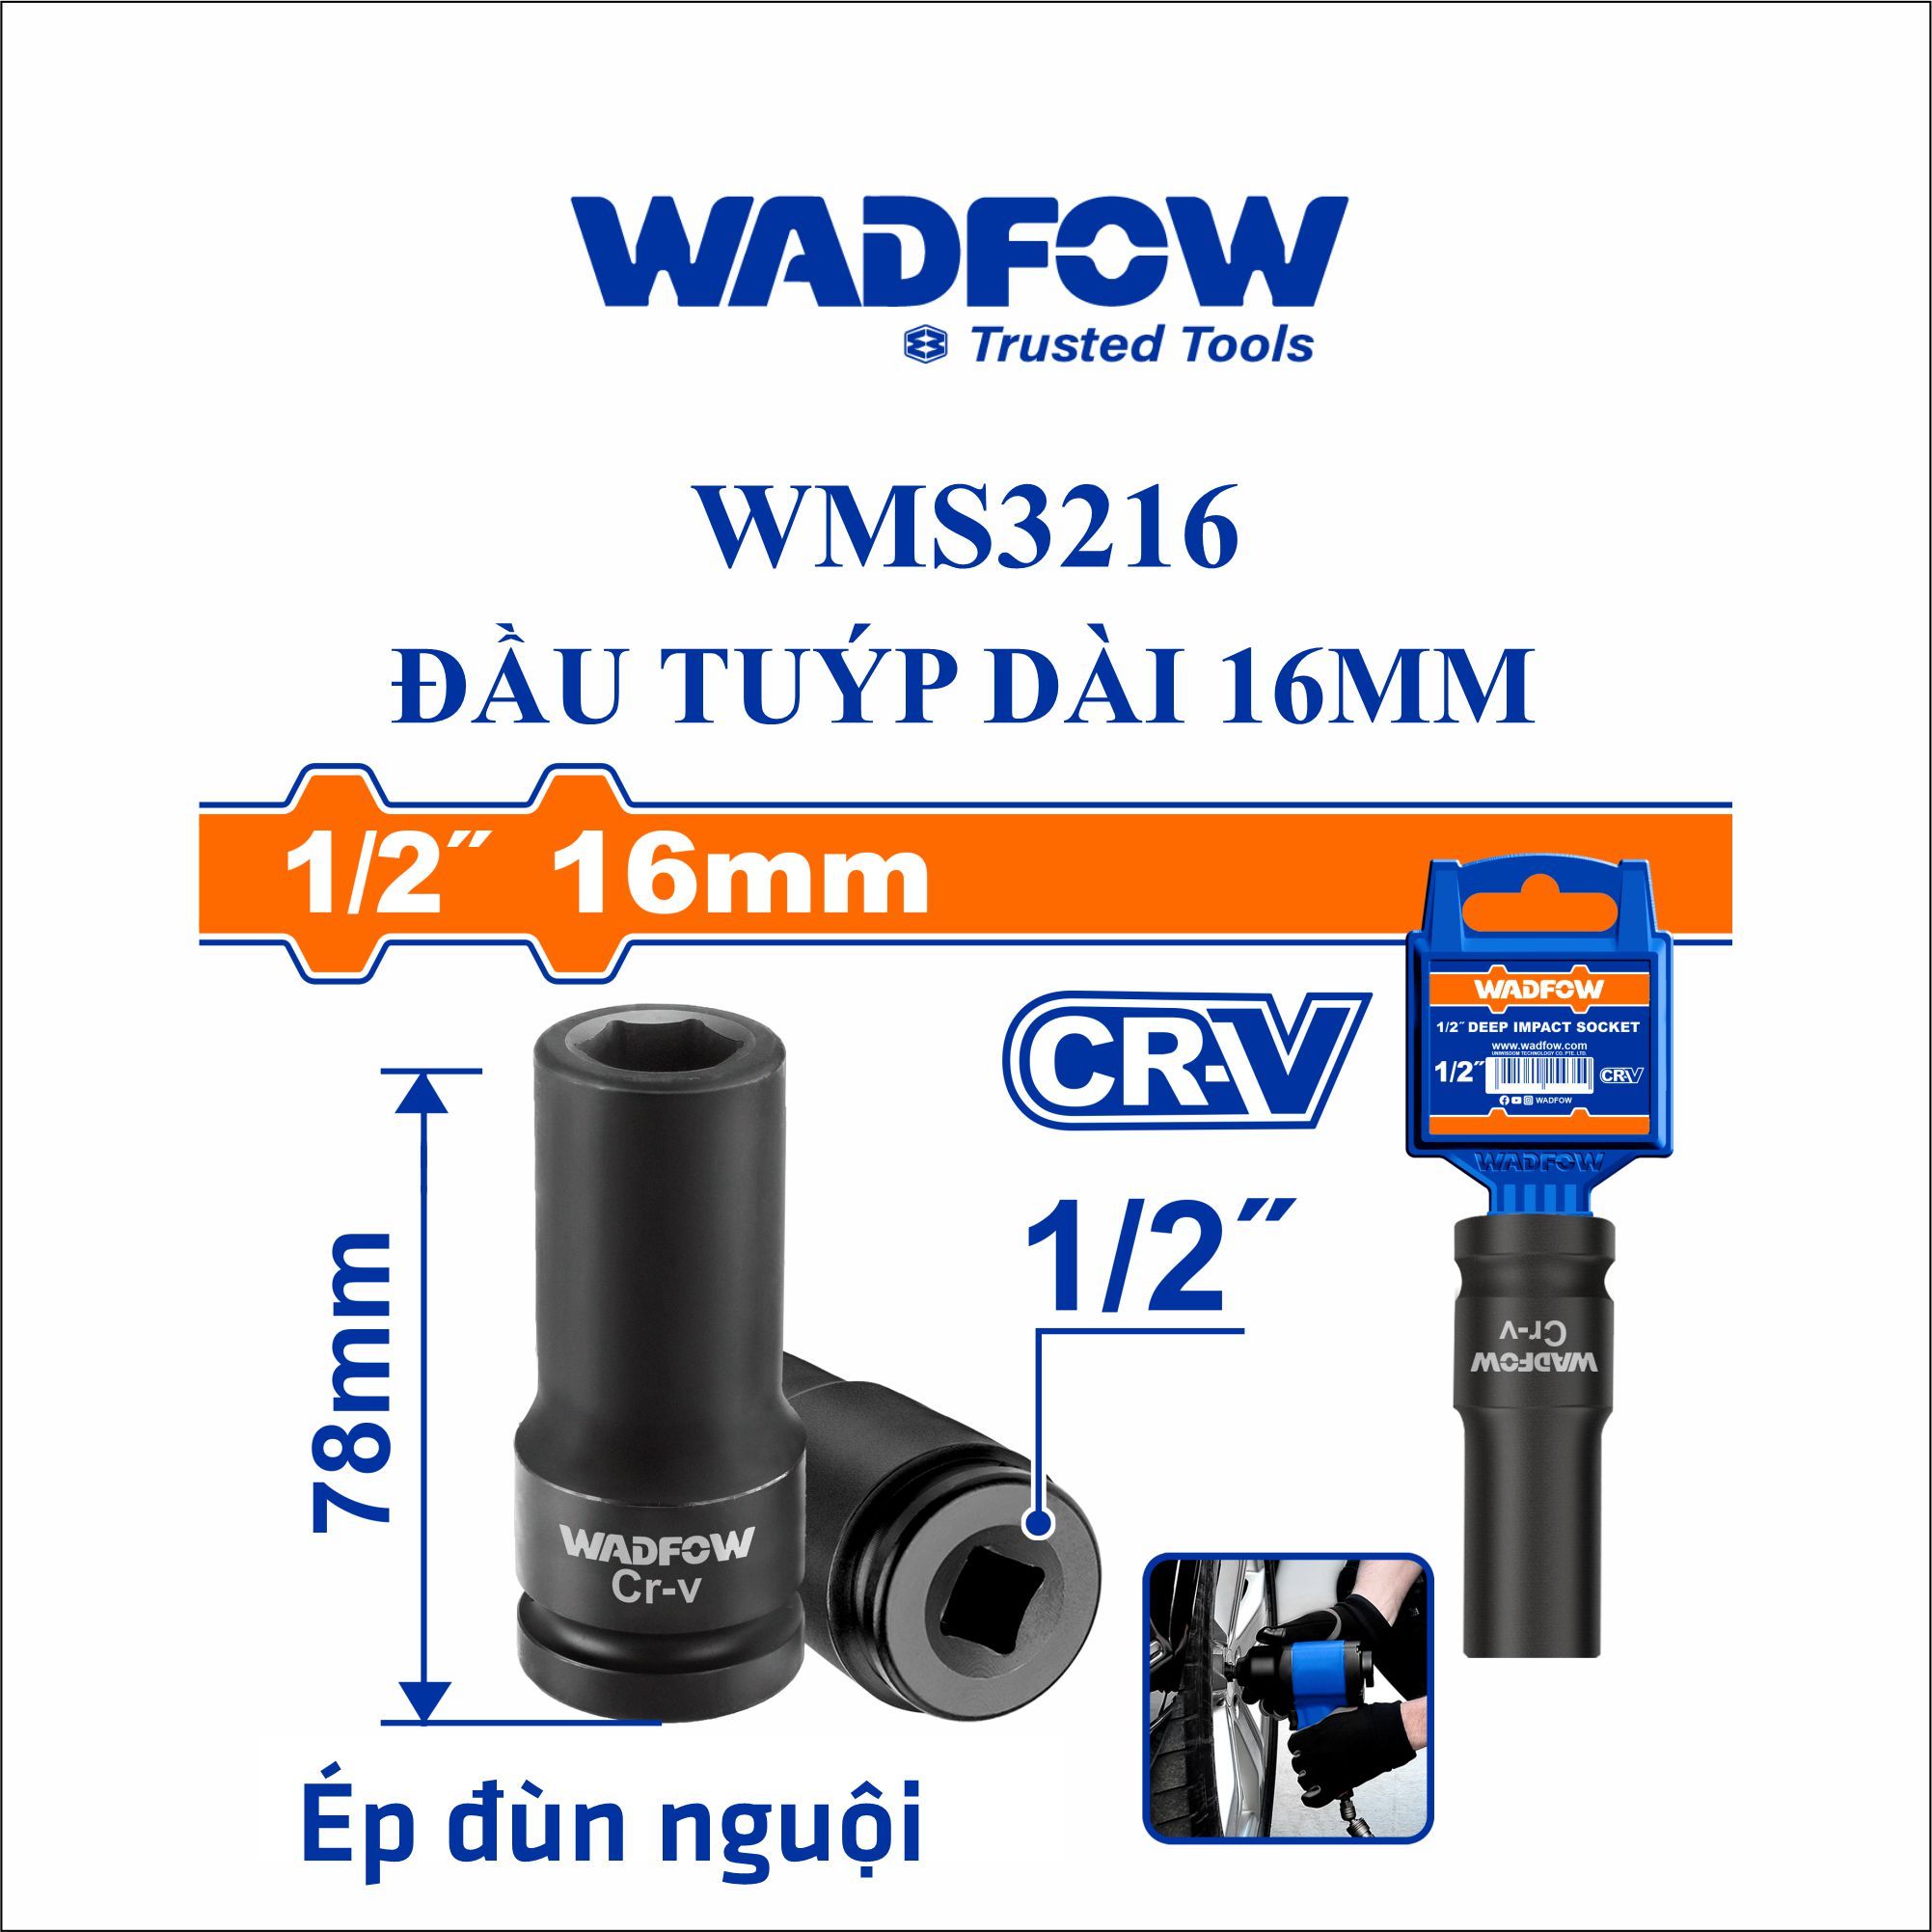  Đầu tuýp dài 16mm WADFOW WMS3216 